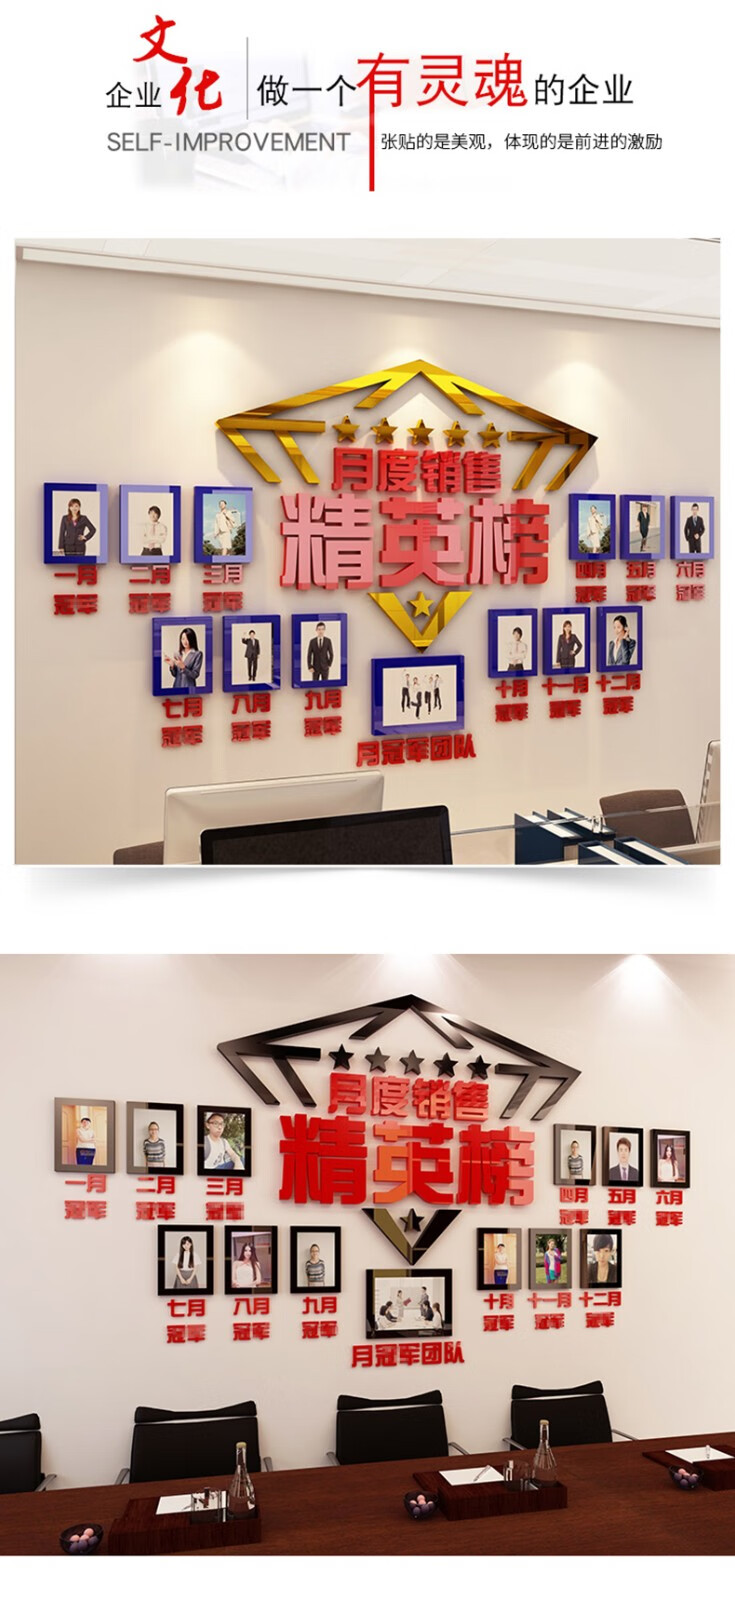 名称:光荣誉精英榜公司销售业绩员工风采3d亚克力照片墙展示办公室